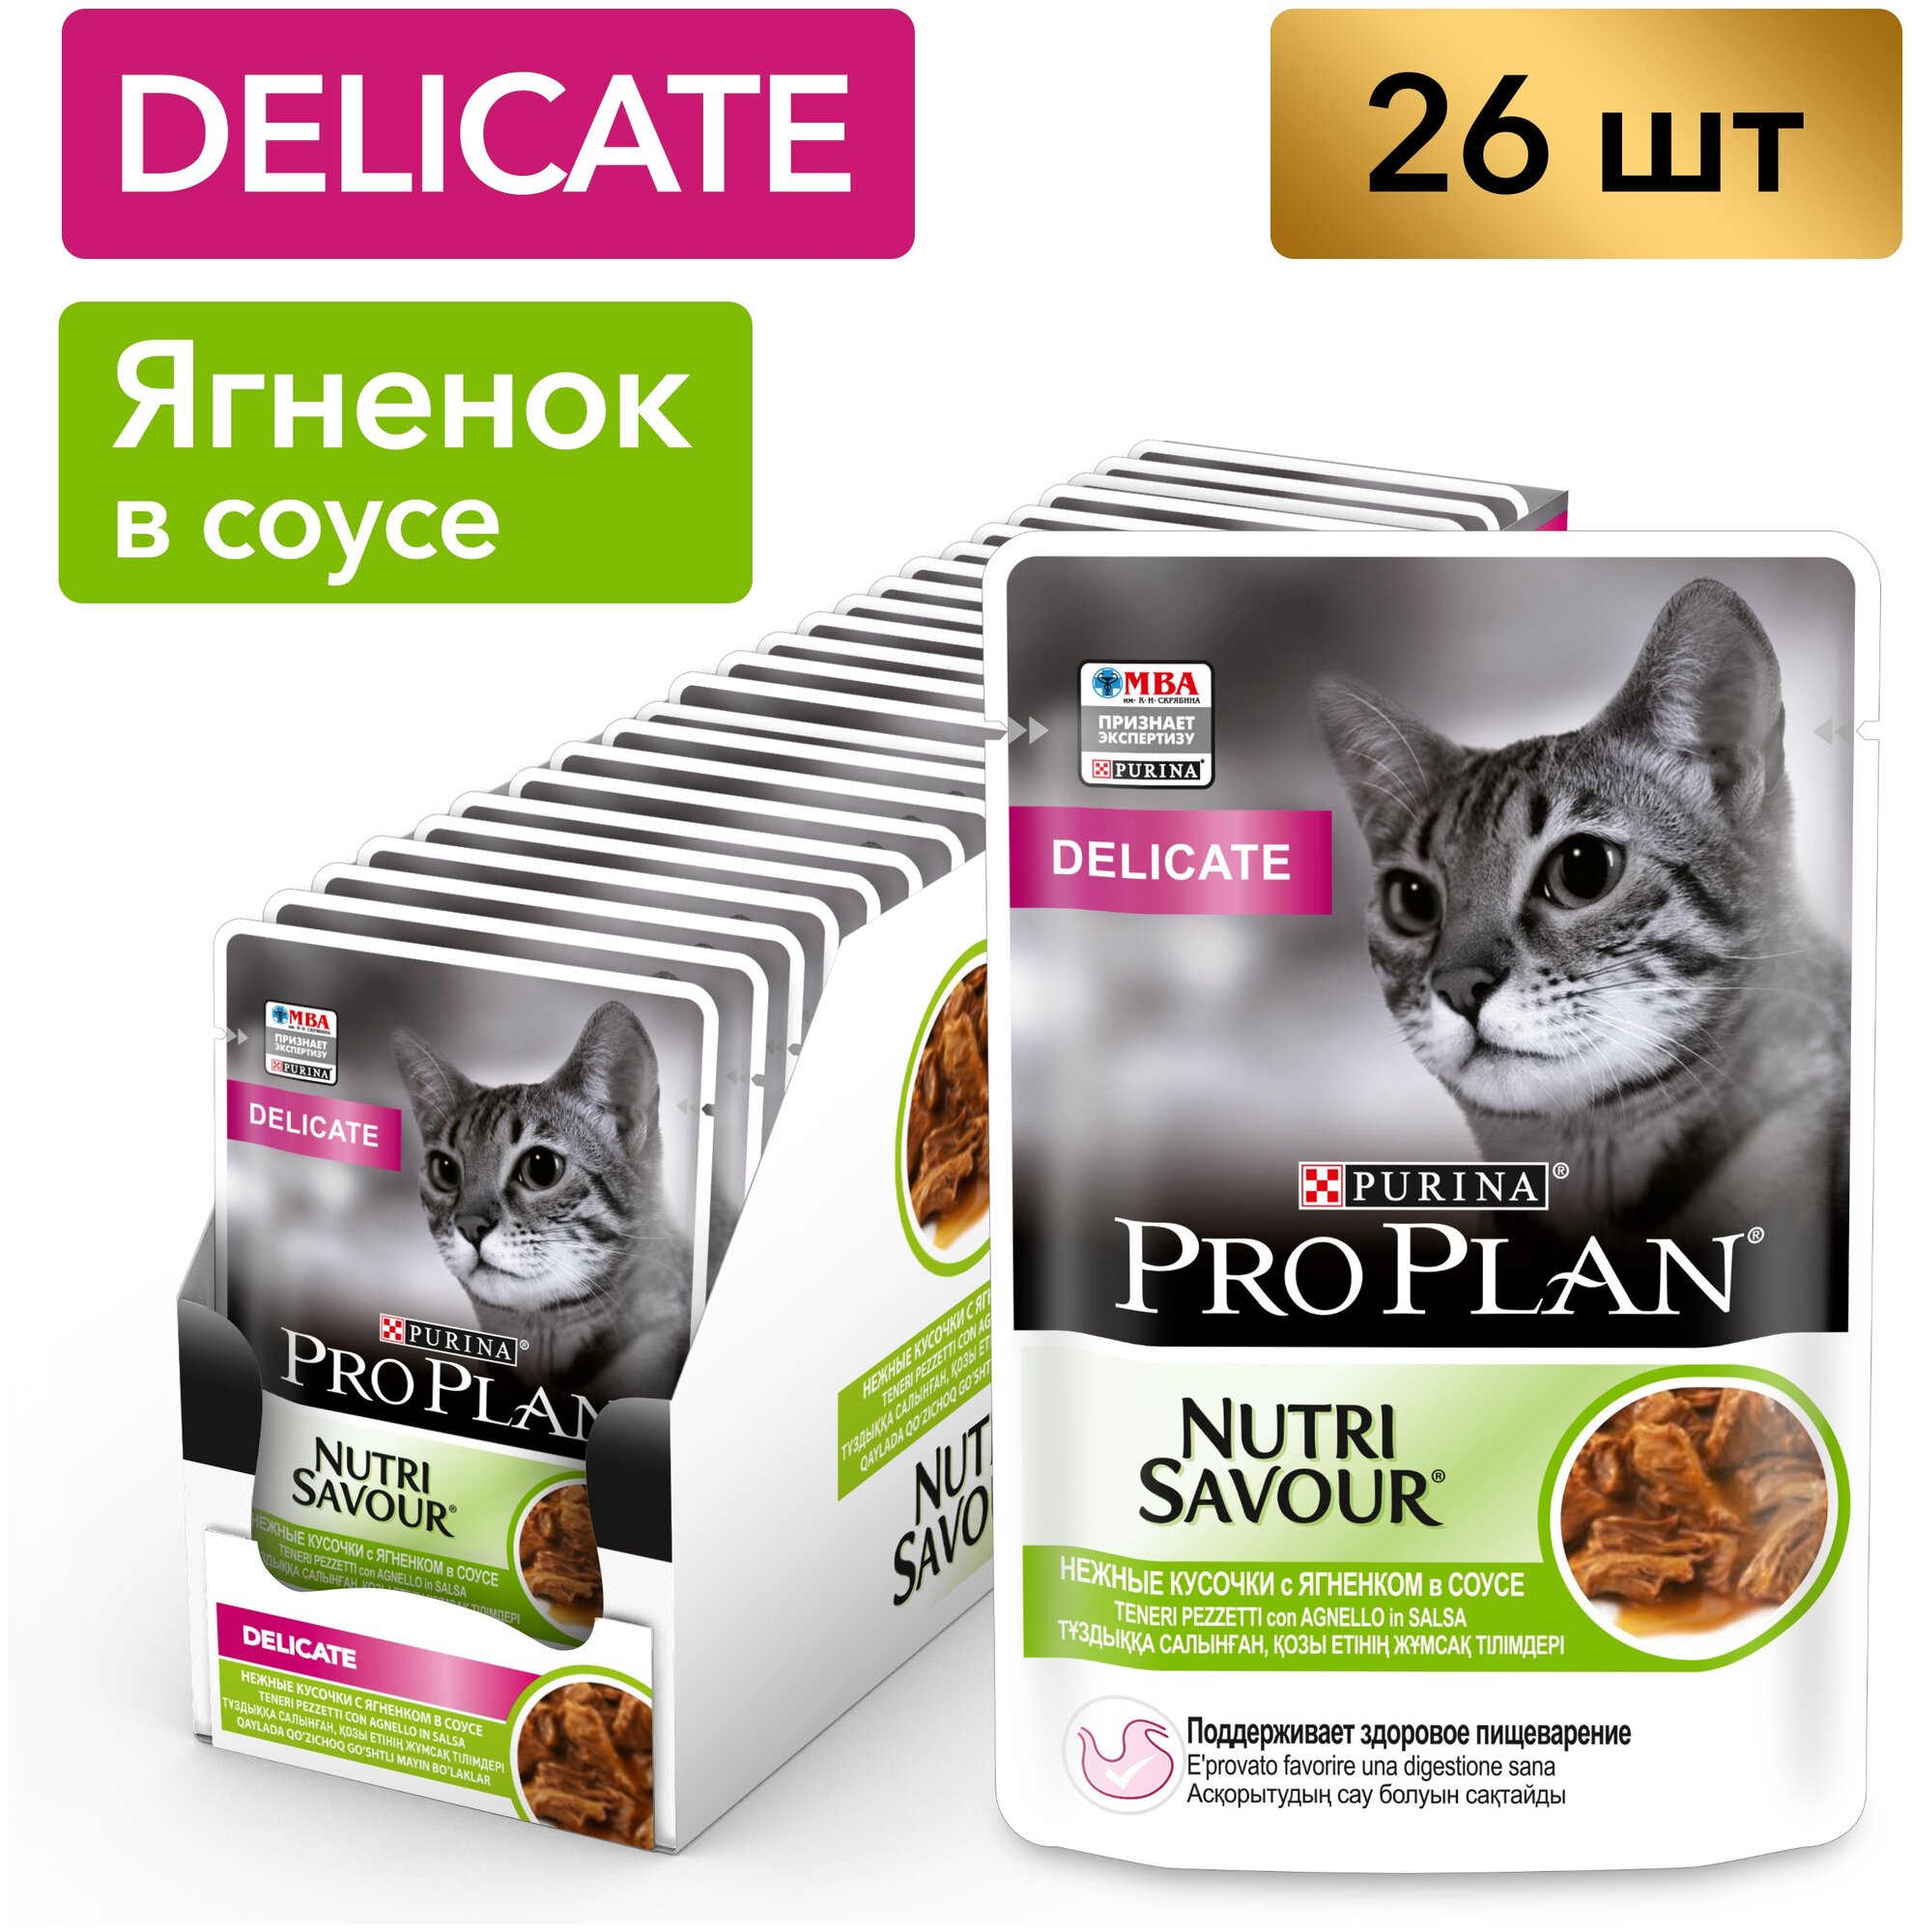 Pro Plan ® Nutri Savour влажный корм для взрослых кошек с чувствительным пищеварением или с особыми предпочтениями в еде, с ягненком в соусе, 85 г - фото №1